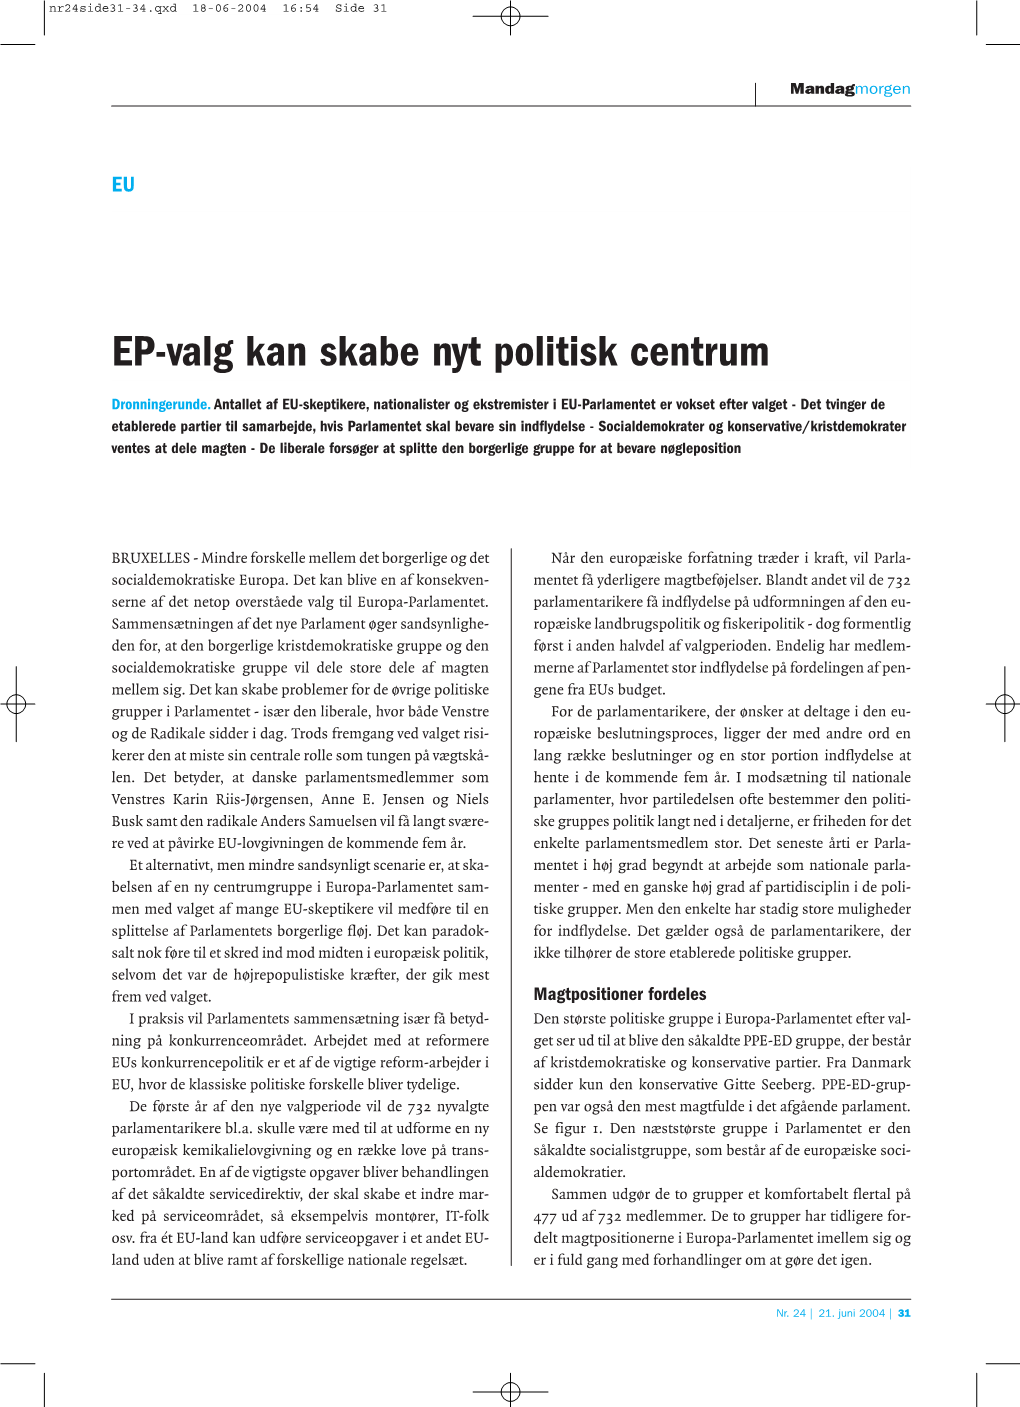 EP-Valg Kan Skabe Nyt Politisk Centrum